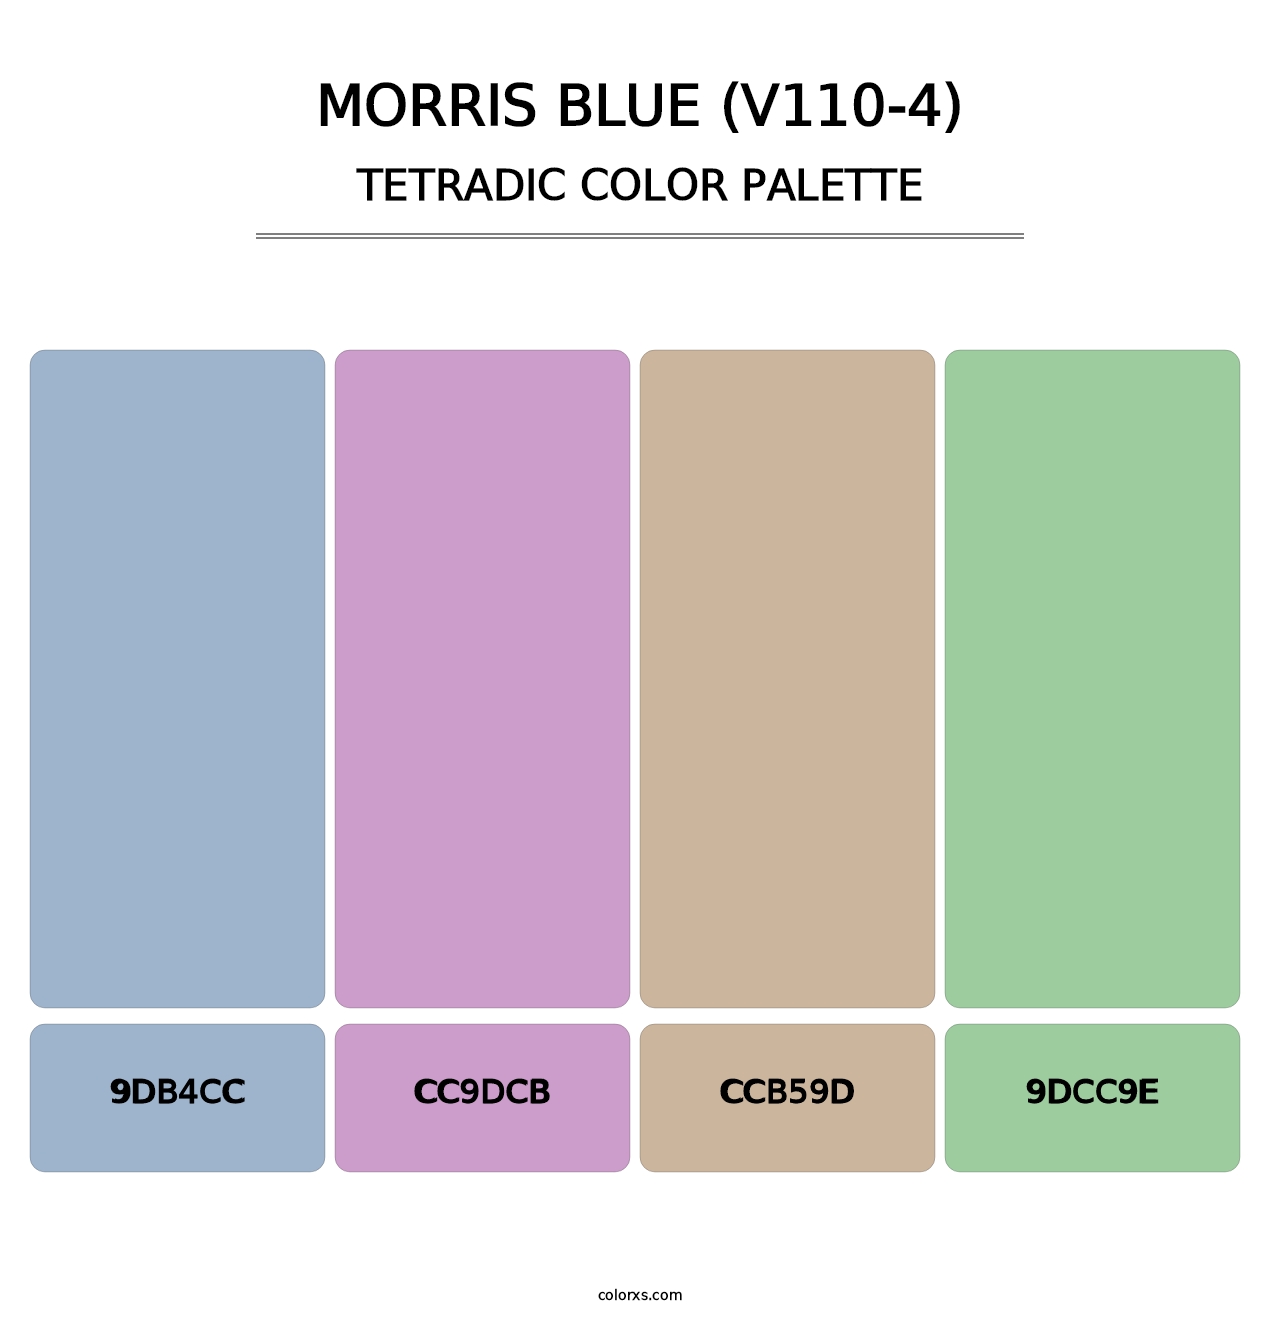 Morris Blue (V110-4) - Tetradic Color Palette